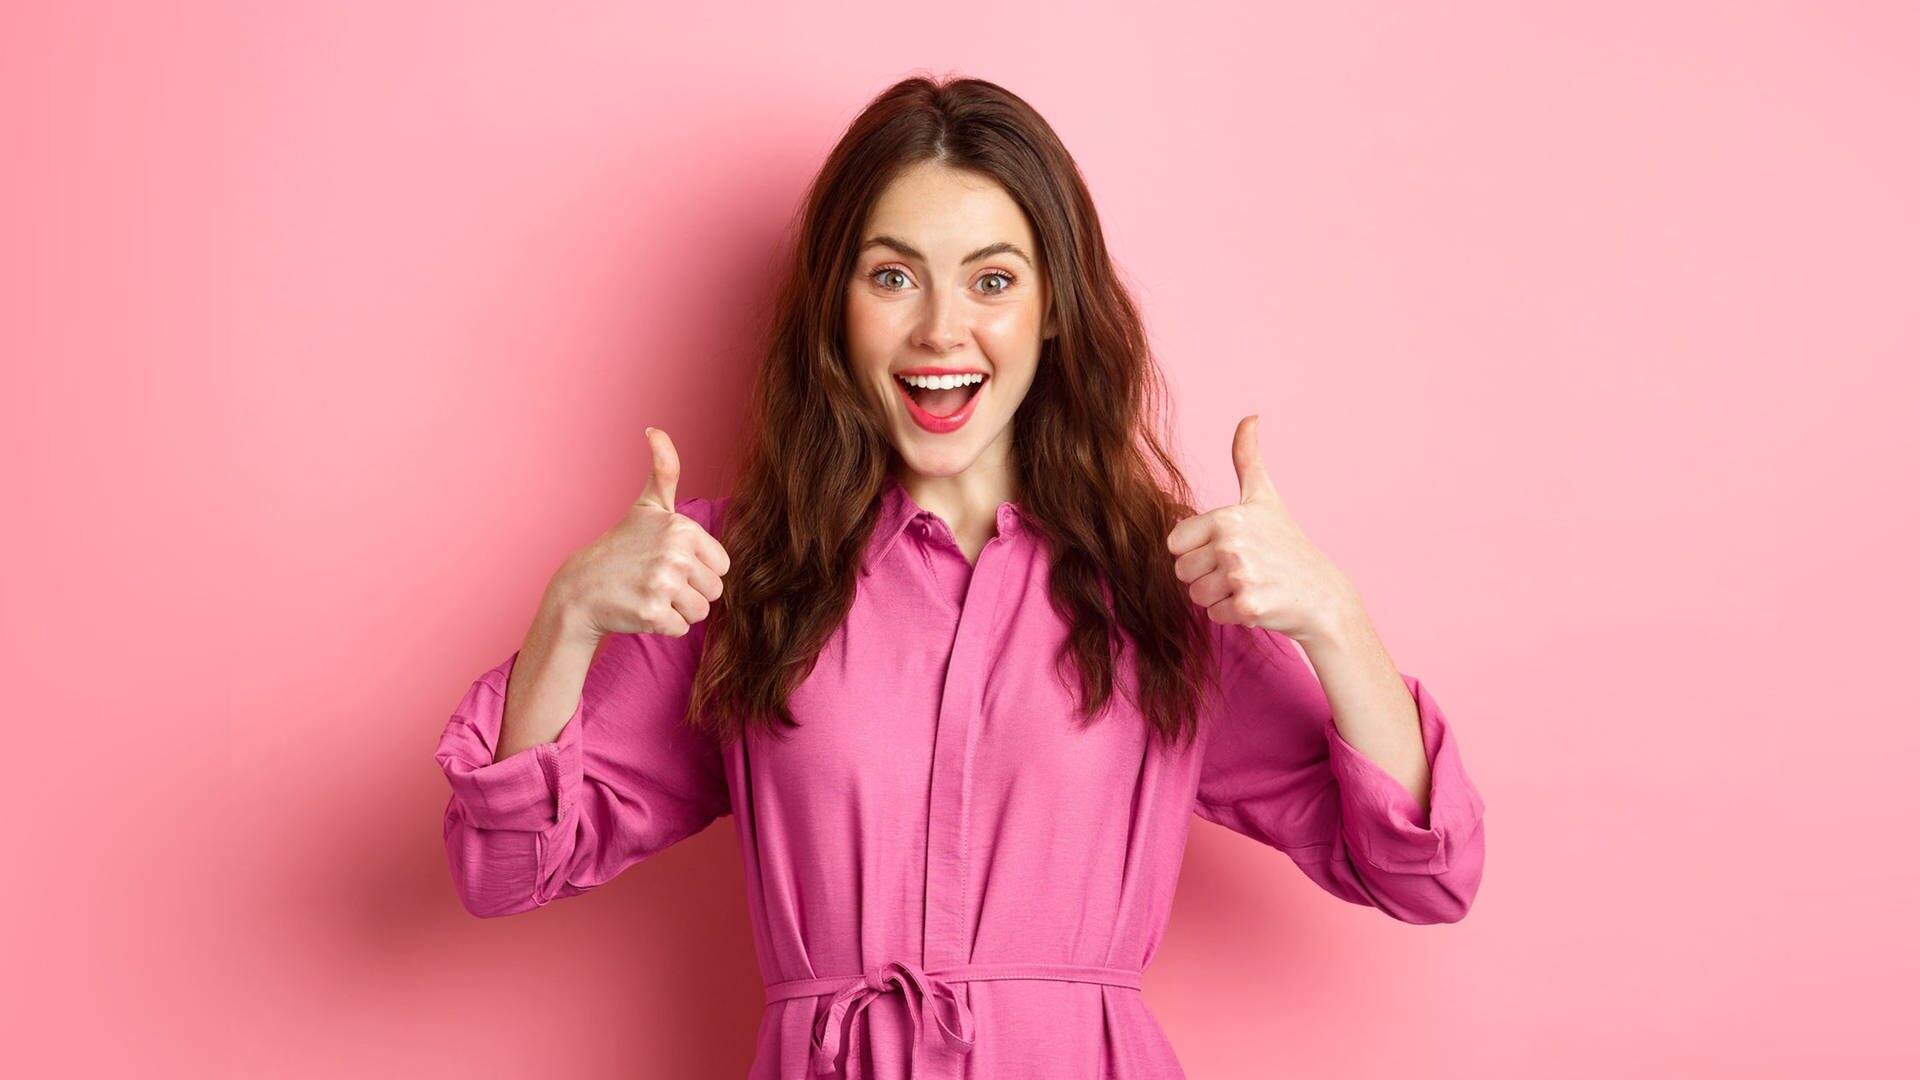 Junge Frau vor pinkfarbenem Hintergrund und mit pinkfarbener Bluse lacht und zeigt mit beiden Daumen in die Luft (Foto: Adobe Stock, Adobe Stock/Mix and Match Studio)